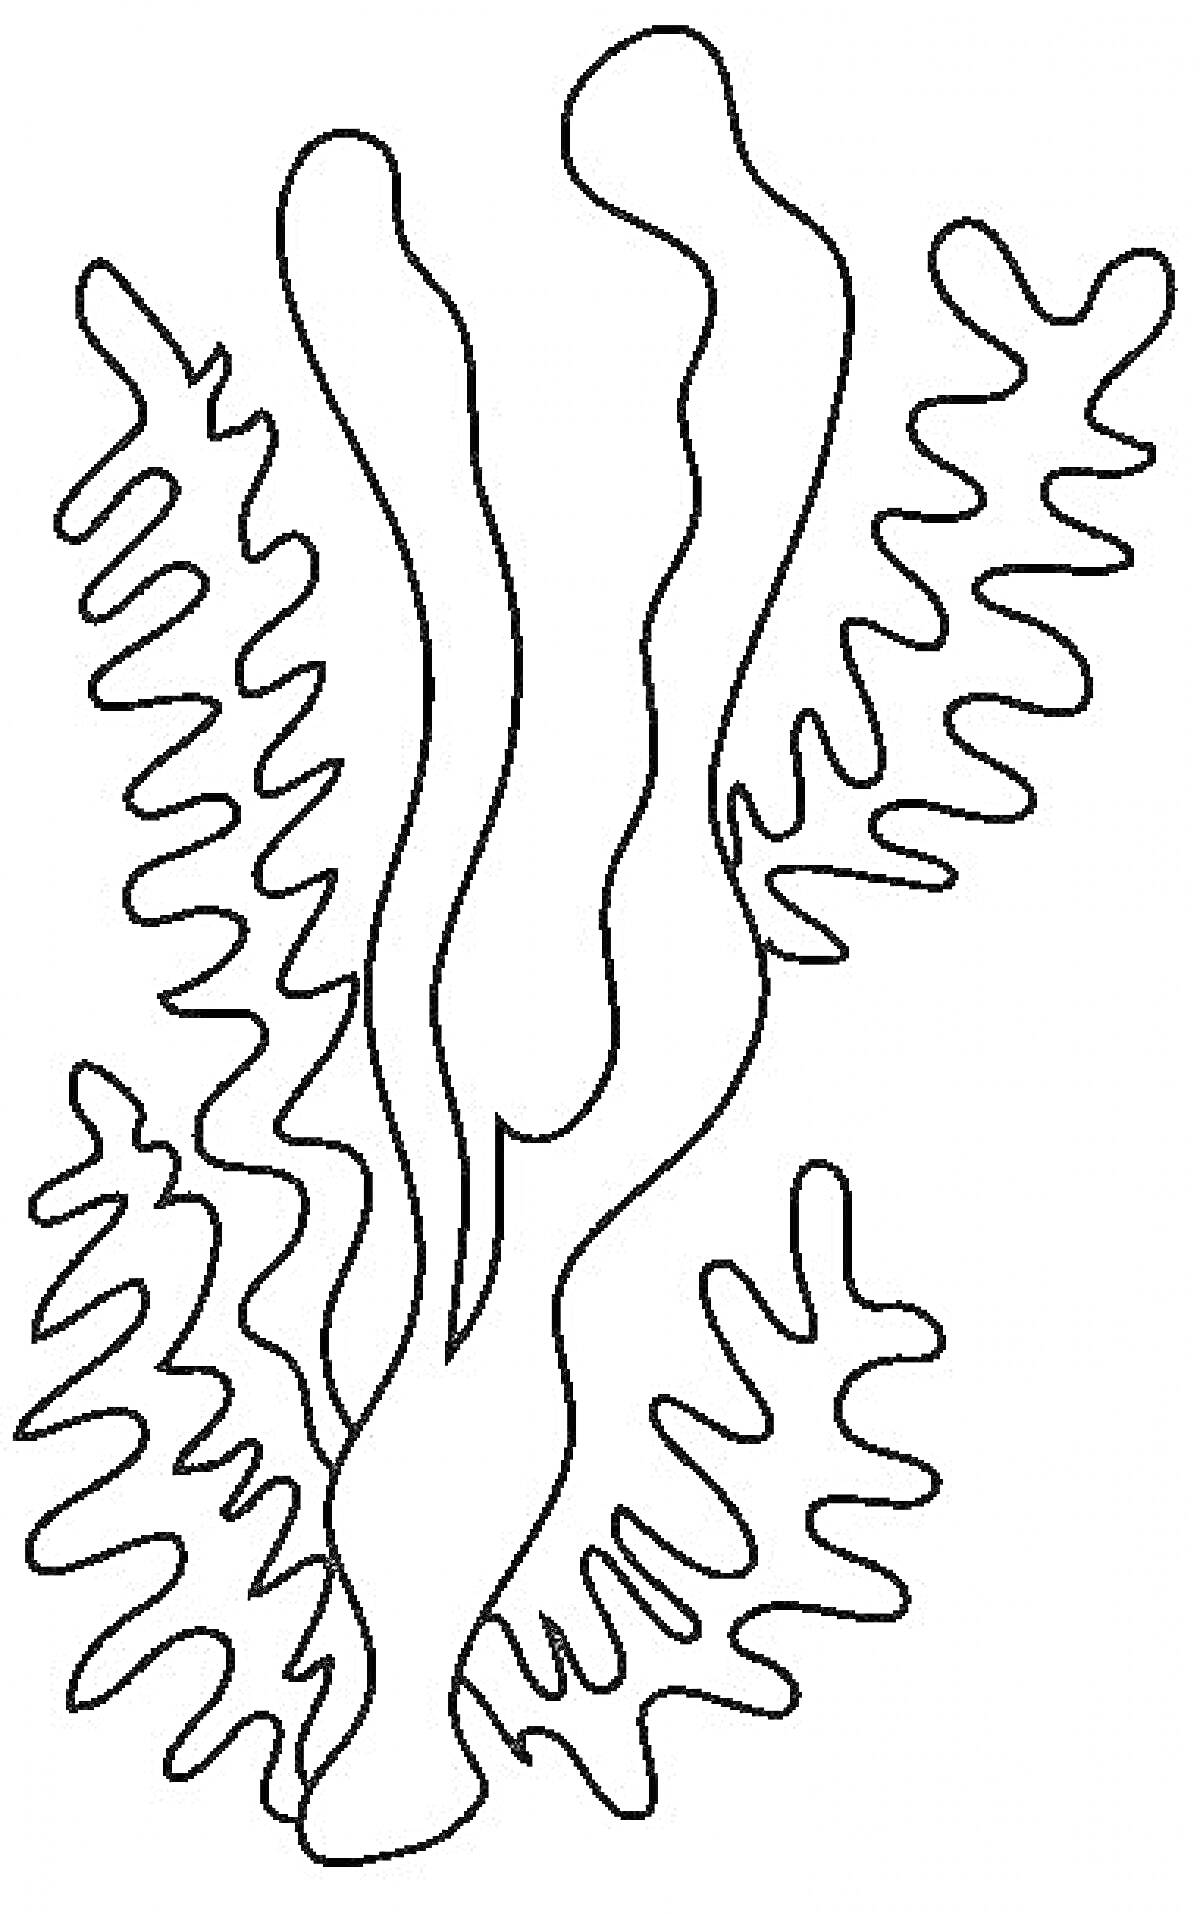 Раскраска Водоросли с длинными и зубчатыми листьями